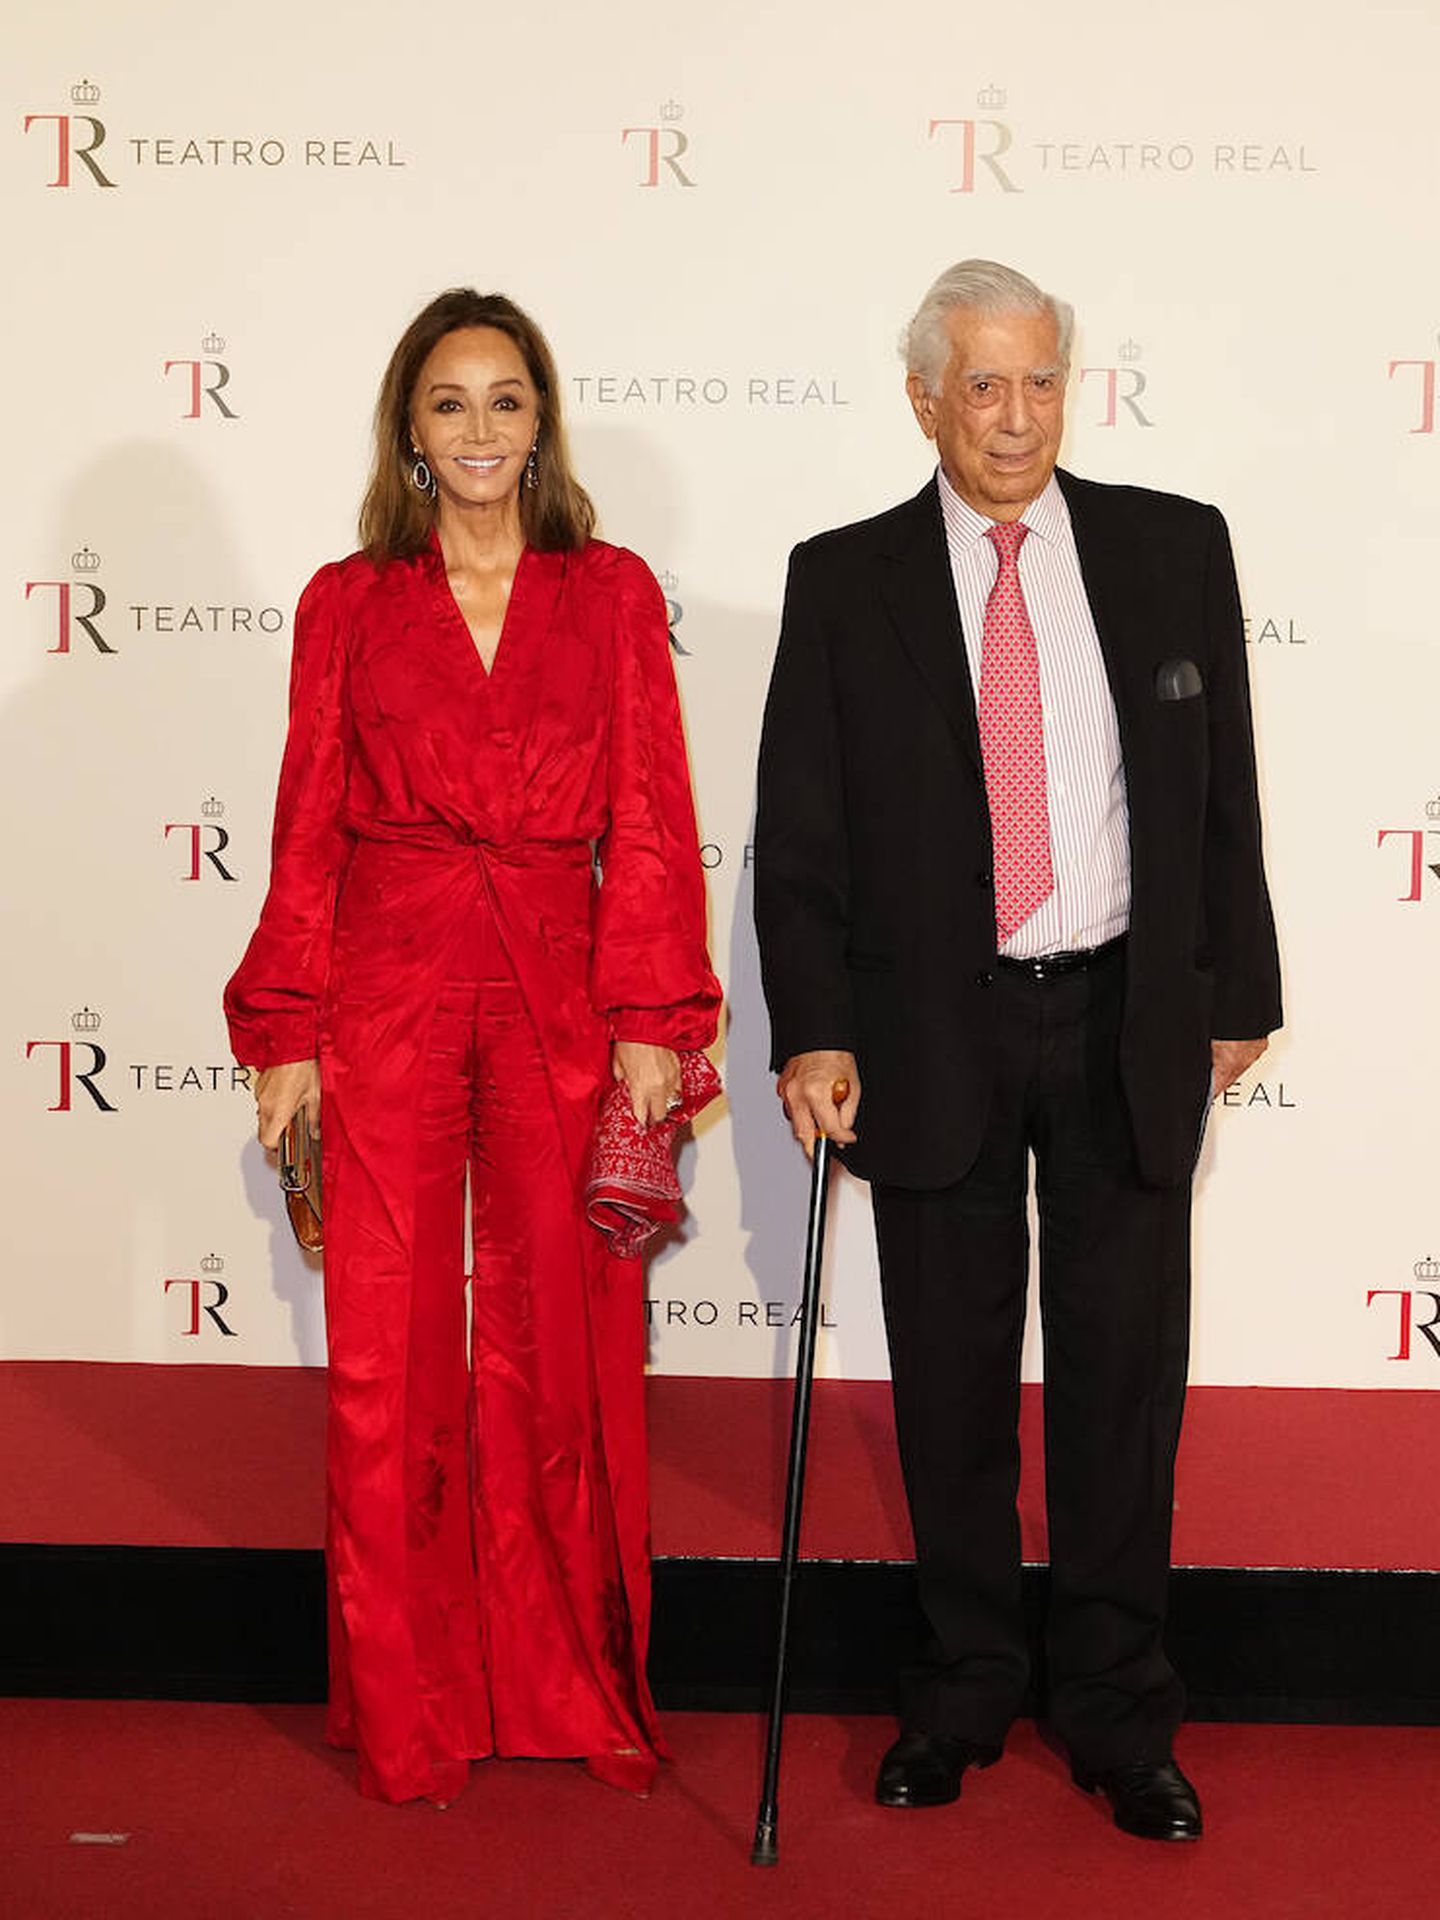 Isabel Preysler y Mario Vargas Llosa asisten al estreno de la nueva temporada en el Teatro Real. (Limited Pictures)